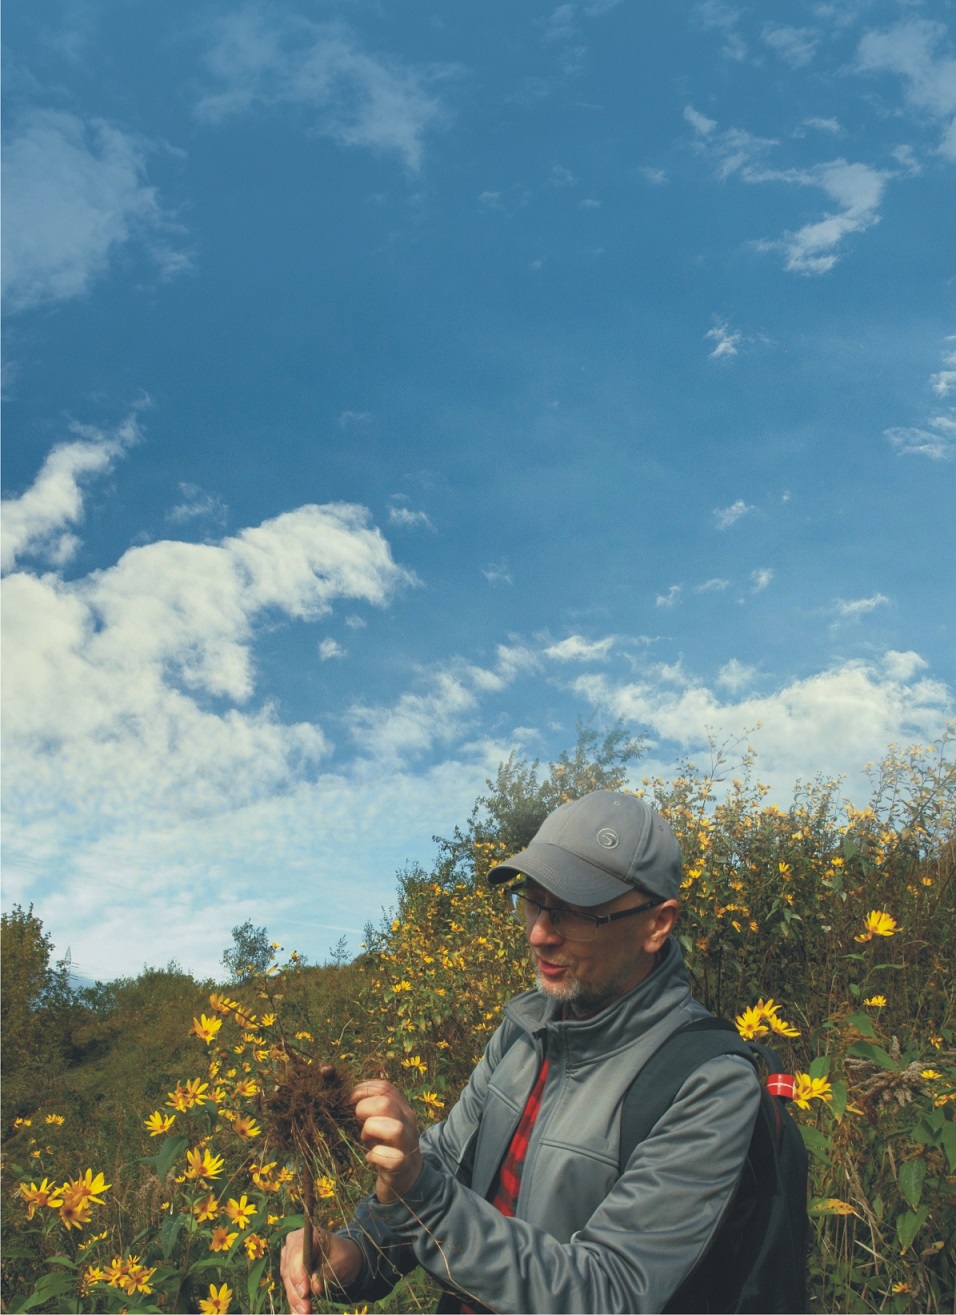 Poszukiwanie wiosny – spacer przyrodniczy z Adamem Balonem. Siemianowice Śląskie